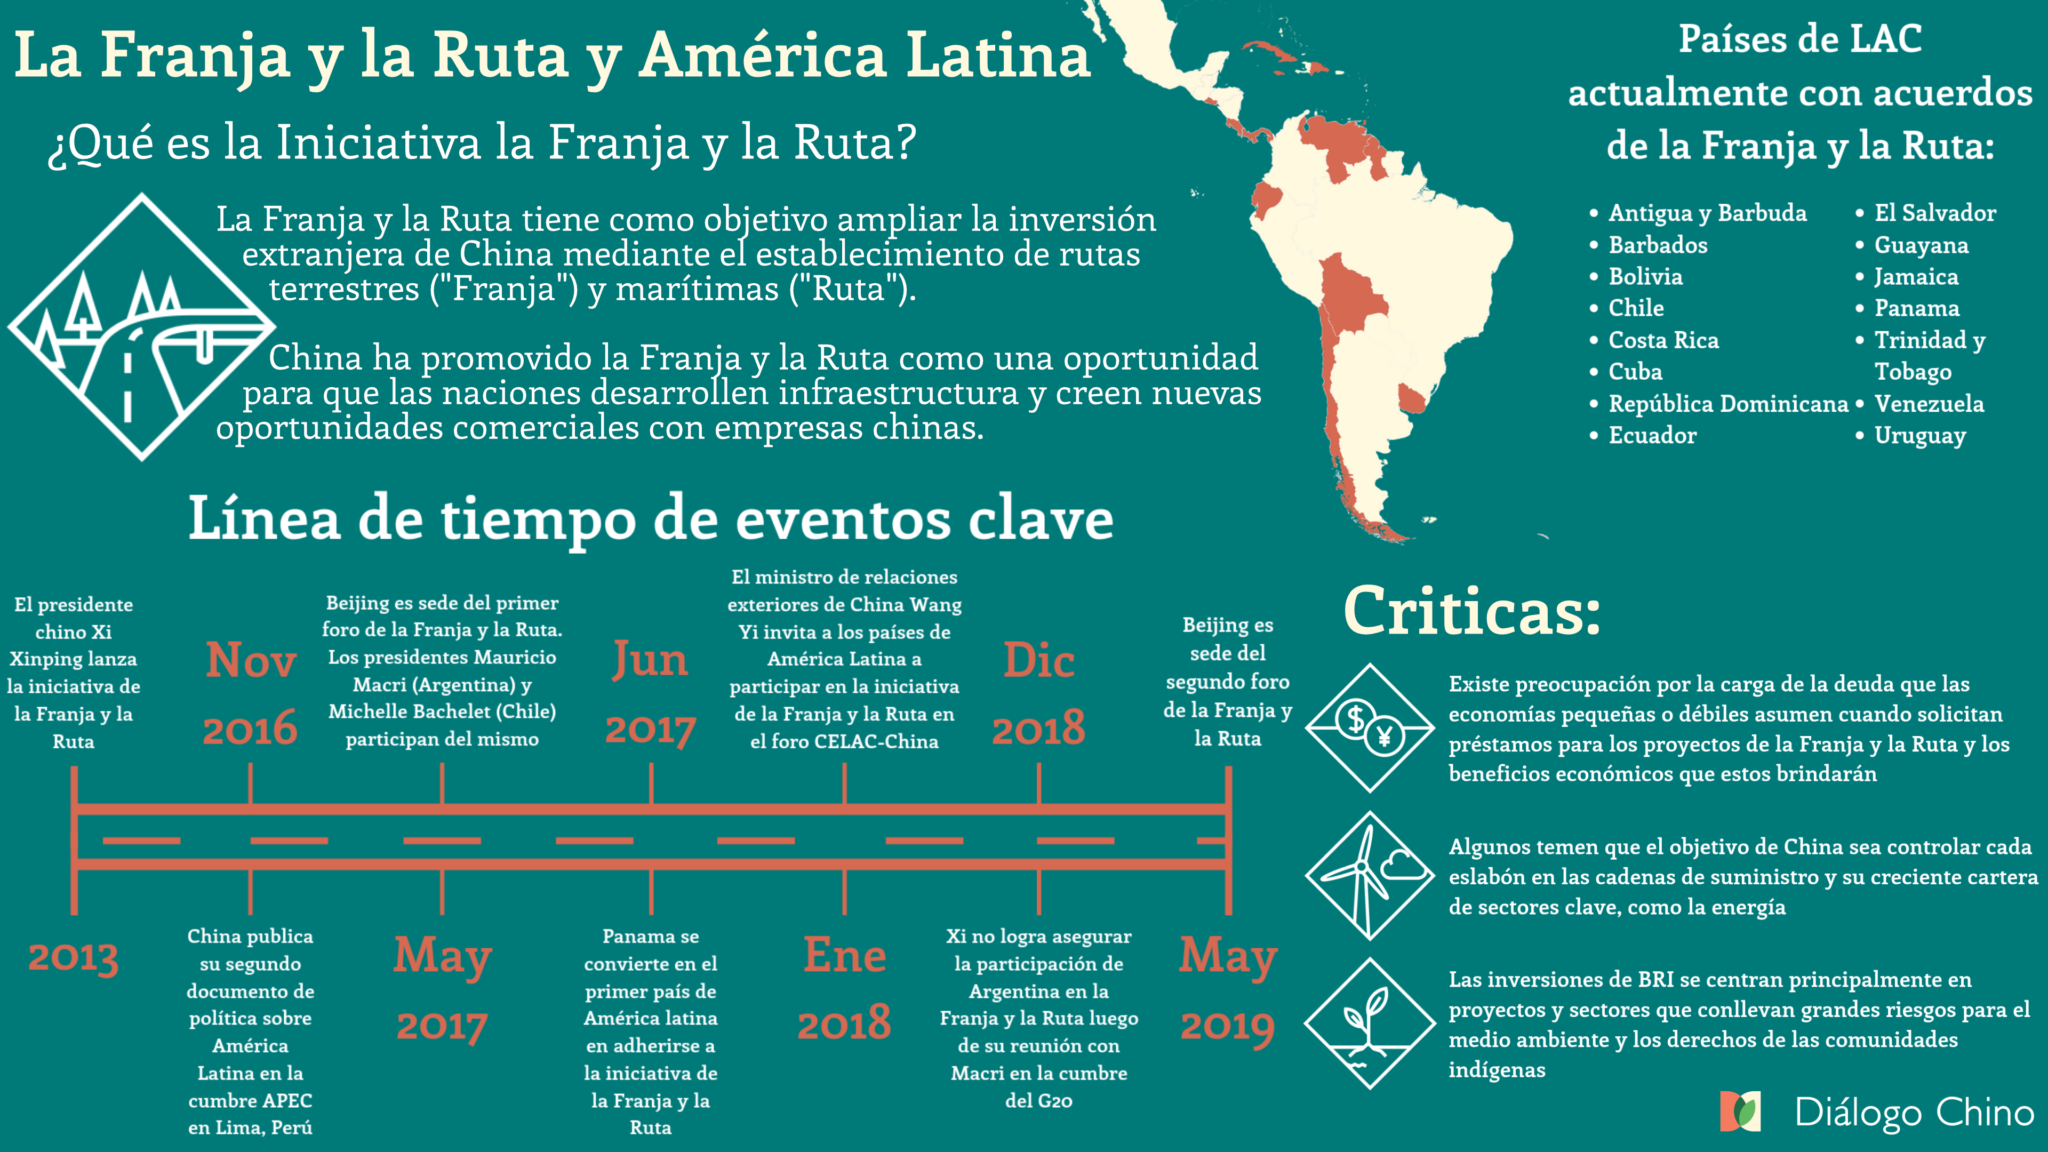 Gráfica que explica qué es la iniciativa de la franja y la ruta, con una línea de tiempo de los eventos clave y un mapa de américa latina con los países miembro